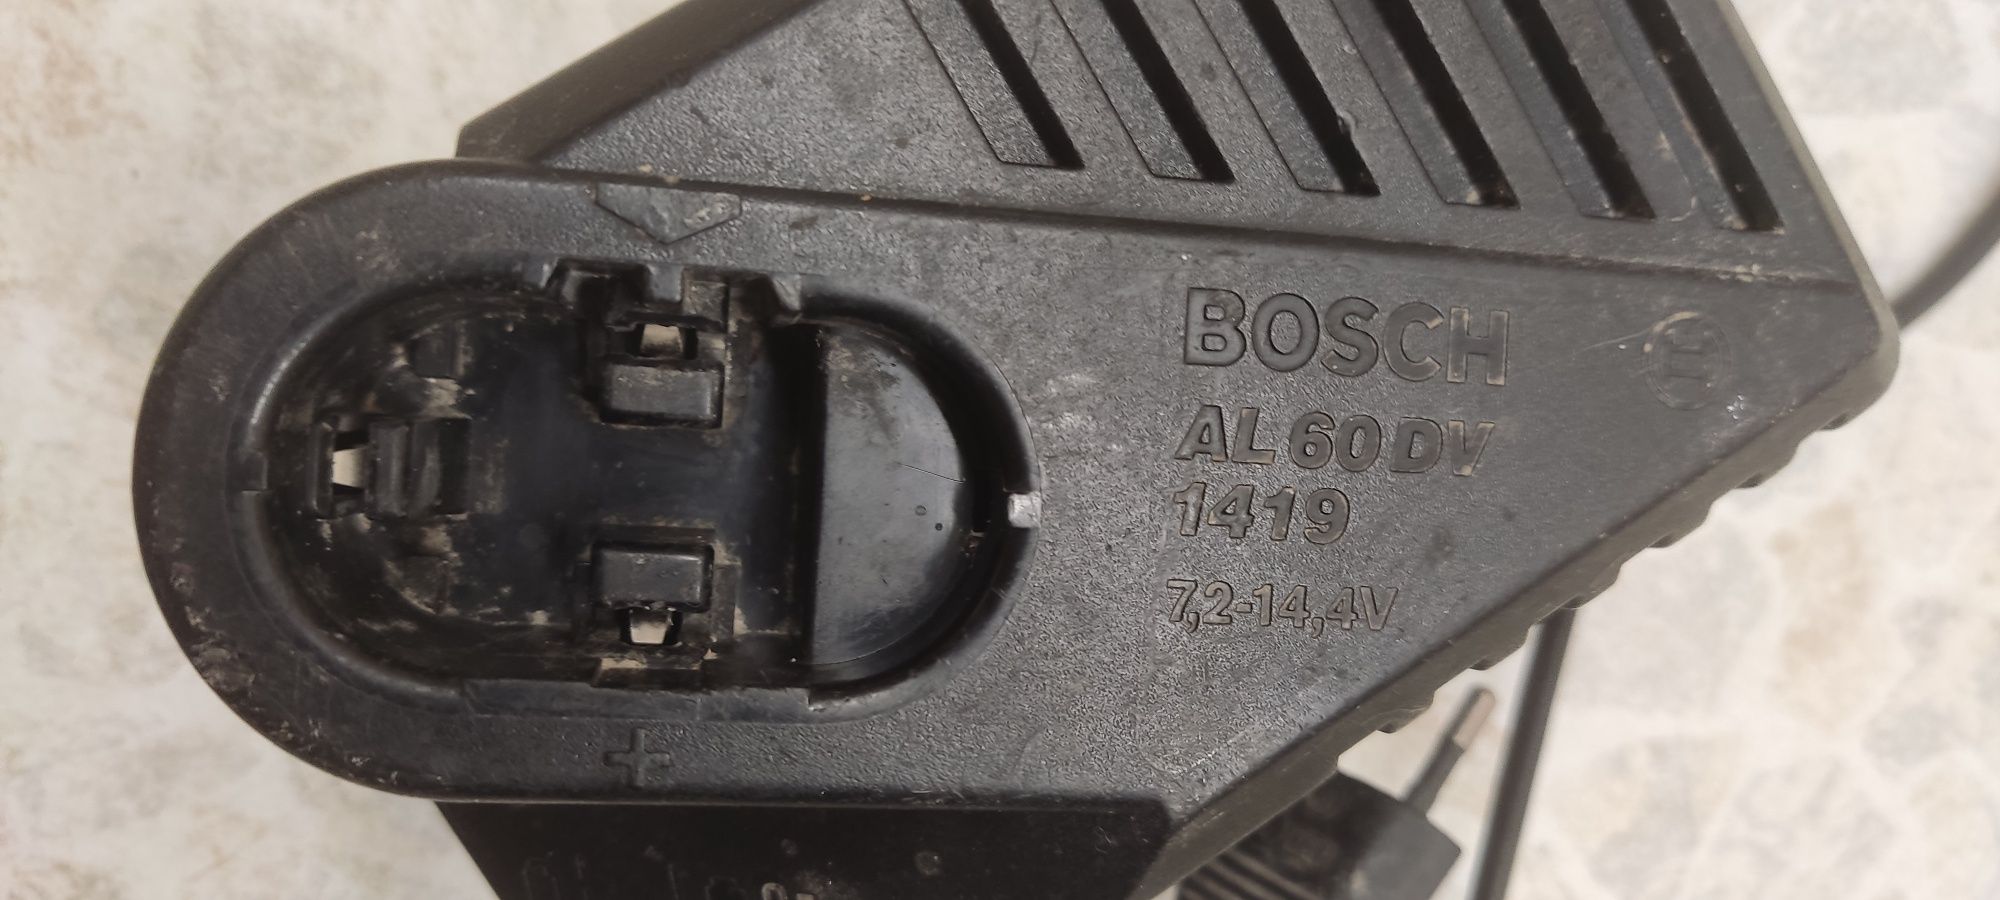 Зарядний пристрій Bosch AL60DV 1419